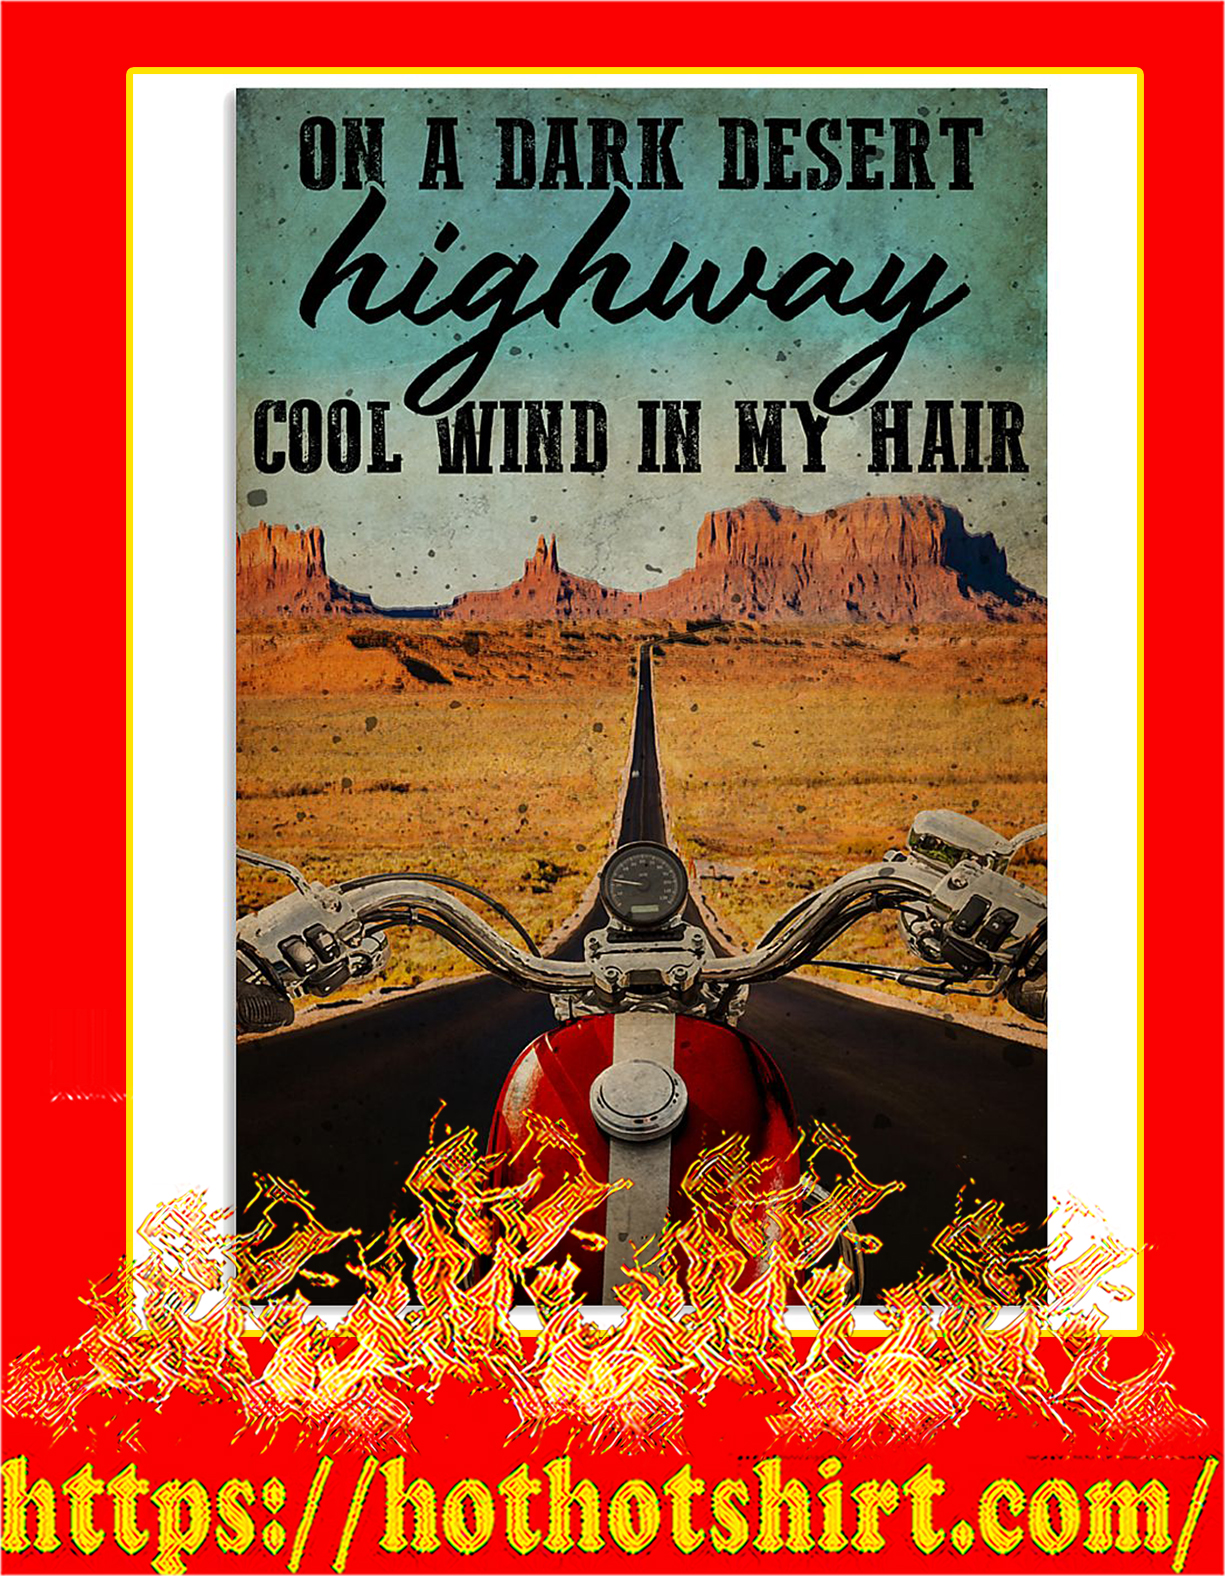 Biker On a dark desert highway cool wind in my hair poster